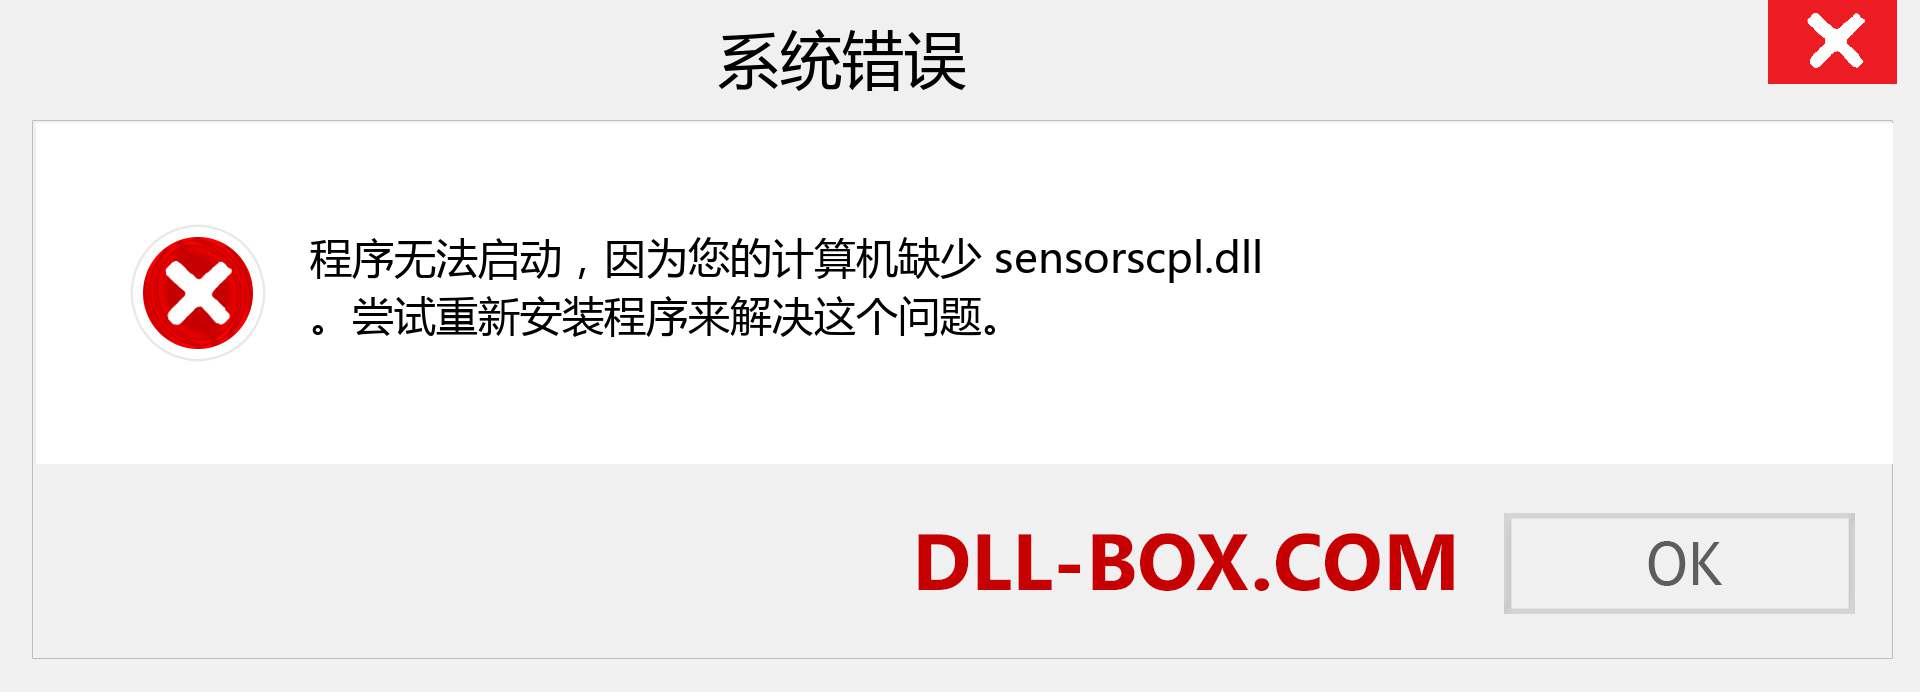 sensorscpl.dll 文件丢失？。 适用于 Windows 7、8、10 的下载 - 修复 Windows、照片、图像上的 sensorscpl dll 丢失错误